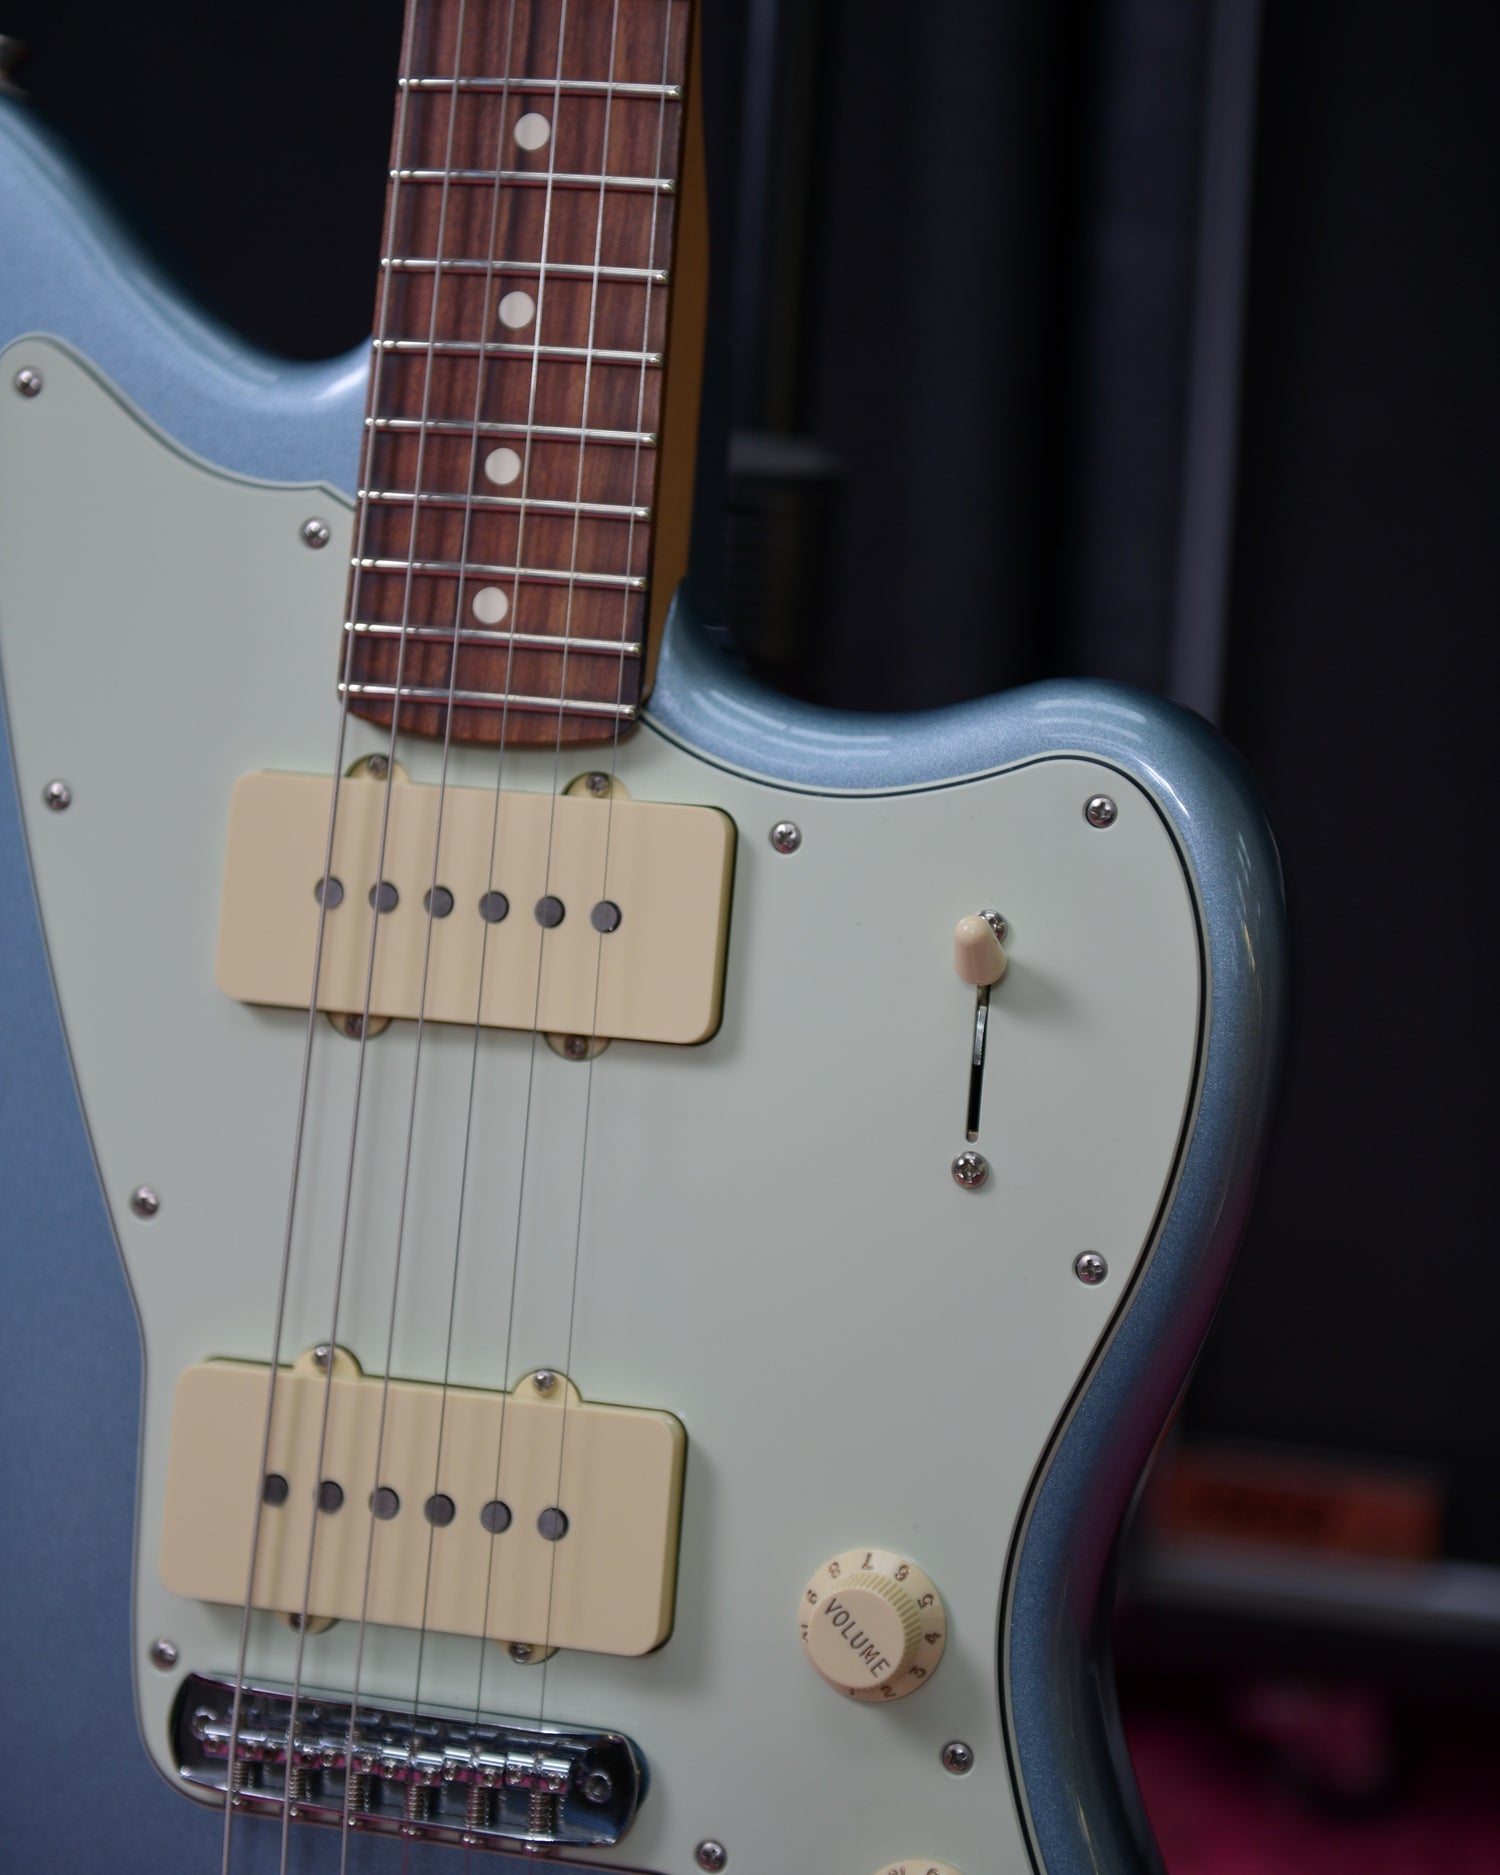 Fender Player Jazzmaster MIM FSR Ice Blue Metallic 2020